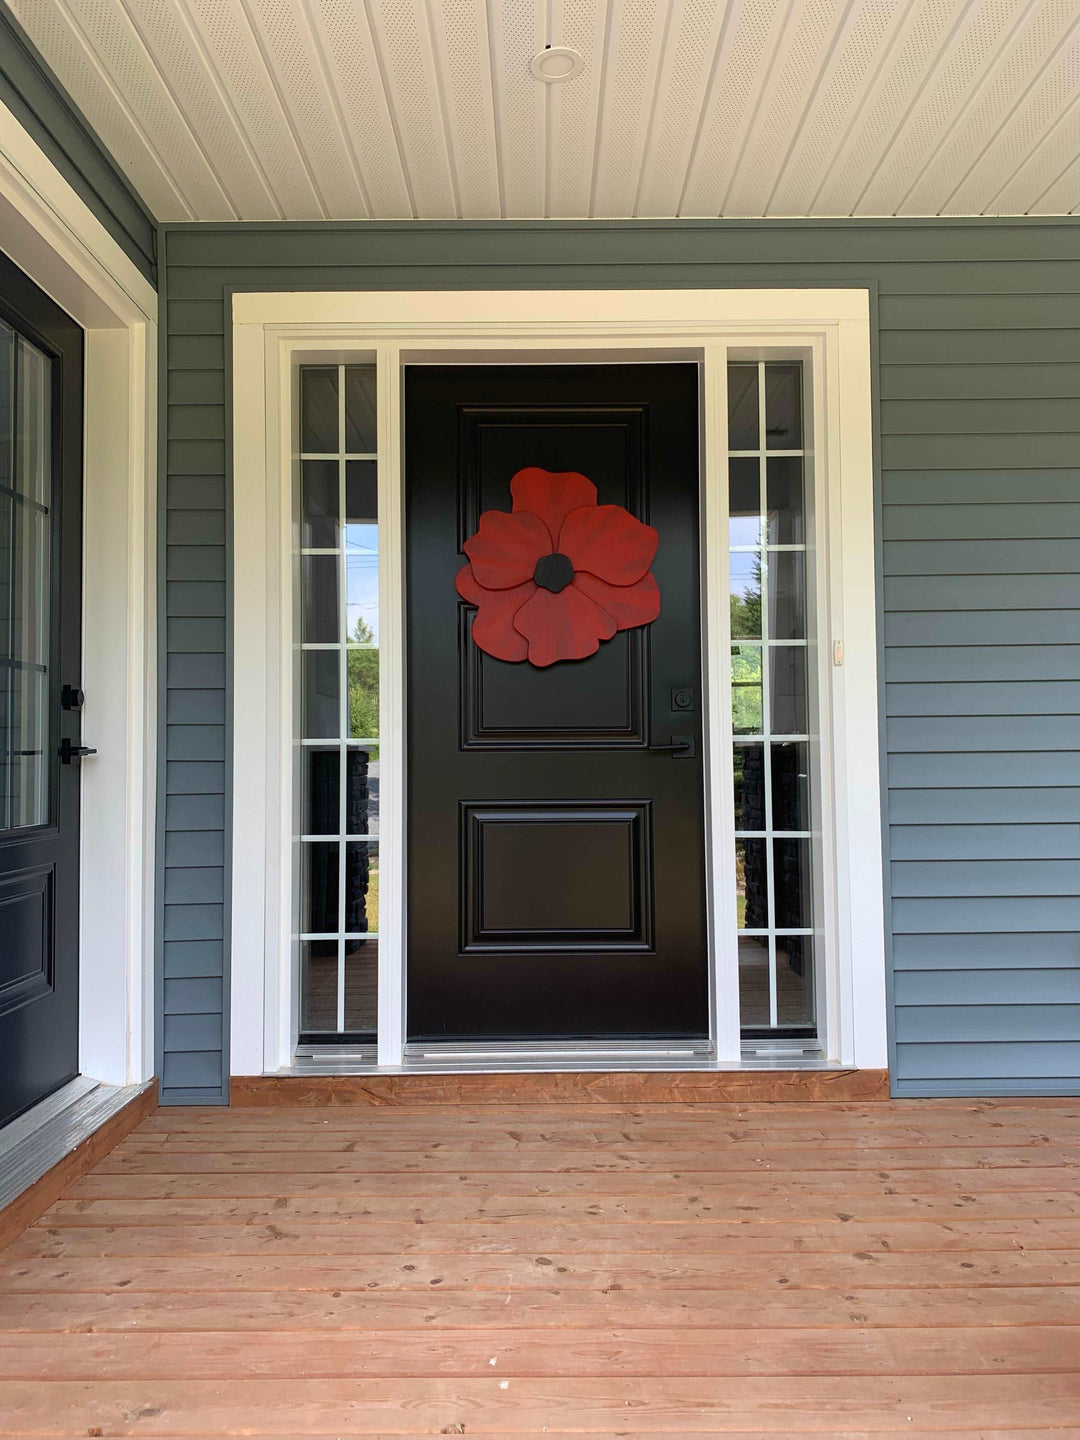  Atlantic Wood N Wares  Home & Garden>Home Décor>Fall décor>door hangings Handcrafted Wooden Flower Door Decor: Anemone Inspired